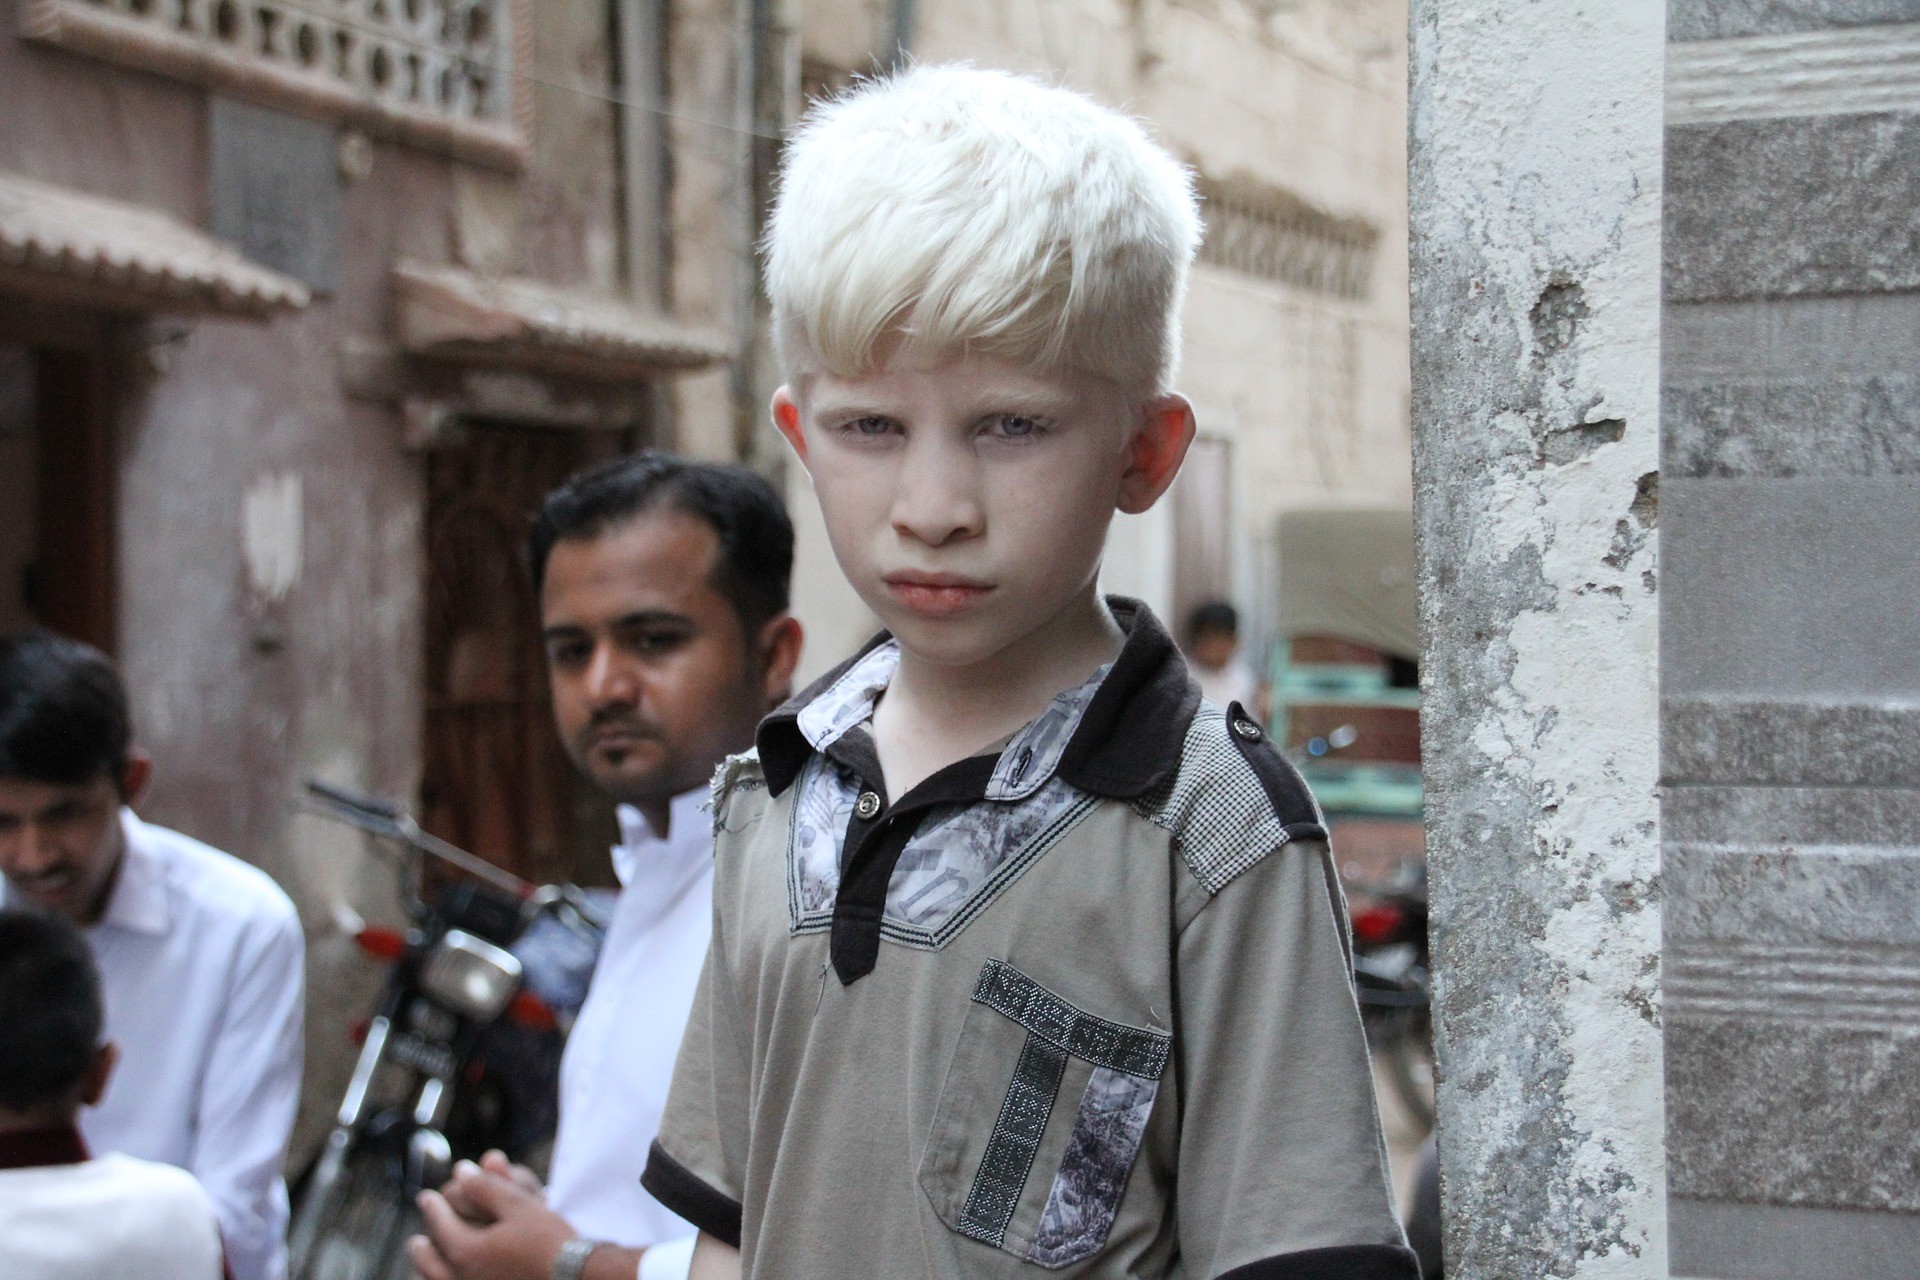 Menino que apresenta albinismo, condição que afeta milhares de pessoas ao redor do planeta (Foto: Pixabay)